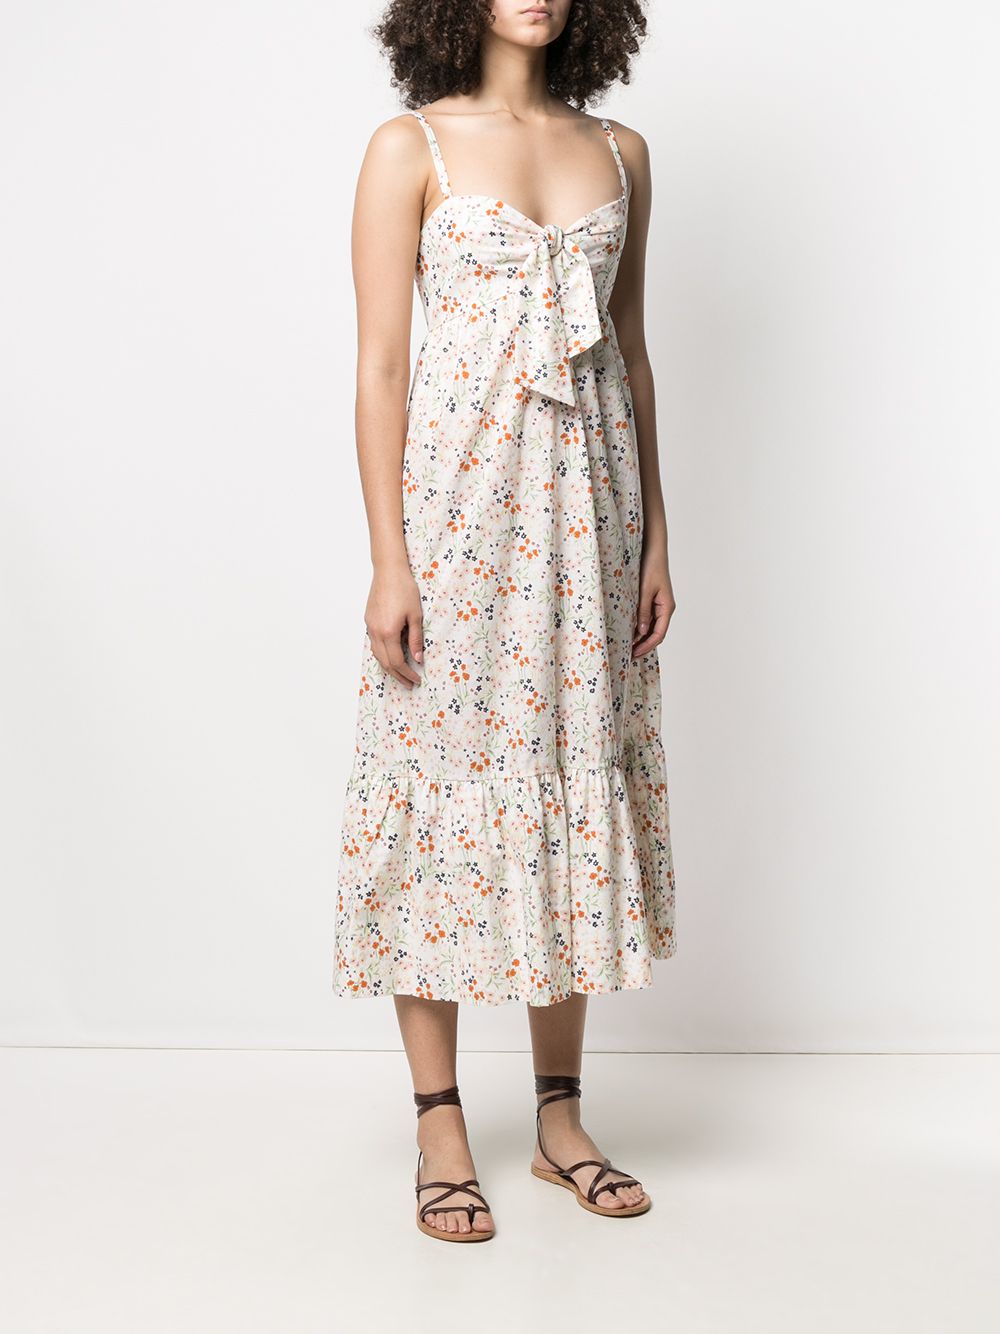 платье миди с цветочным принтом L'Autre Chose 163662695252